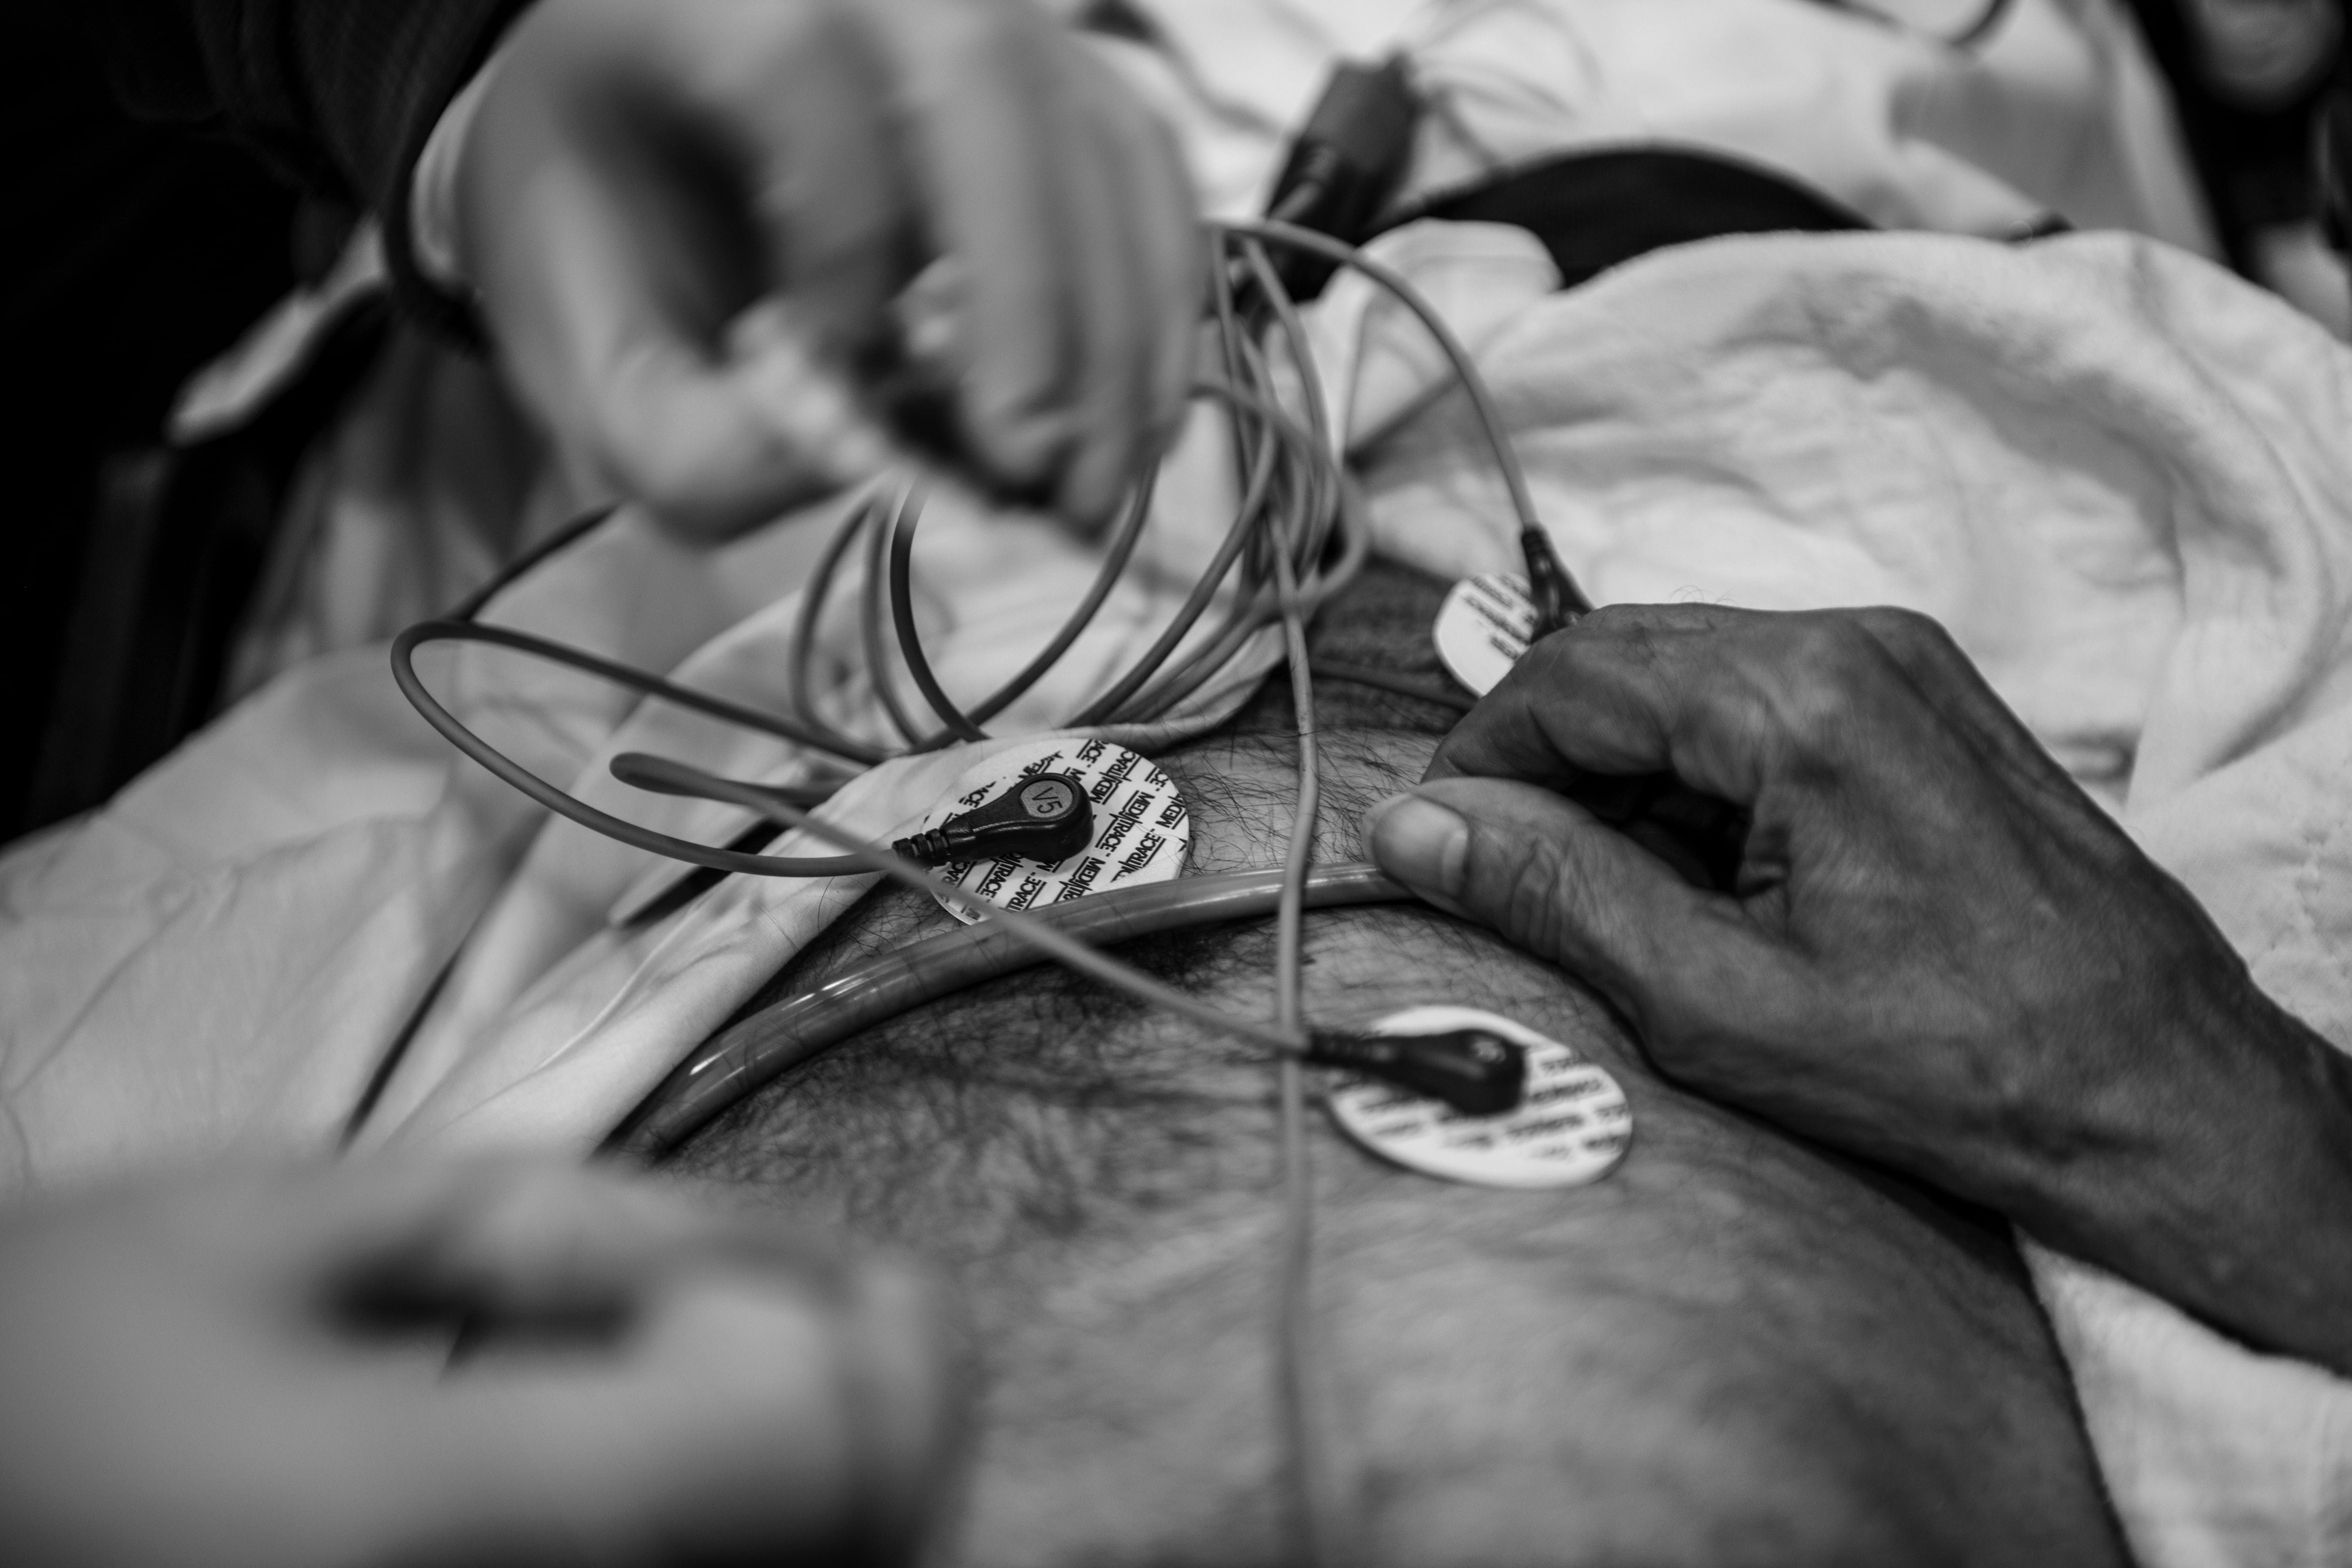 Un paramédico aplica un electrocardiograma a un paciente en una ambulancia en Yonkers, Nueva York, el 18 de abril de 2020 (Andrew Renneisen/The New York Times)